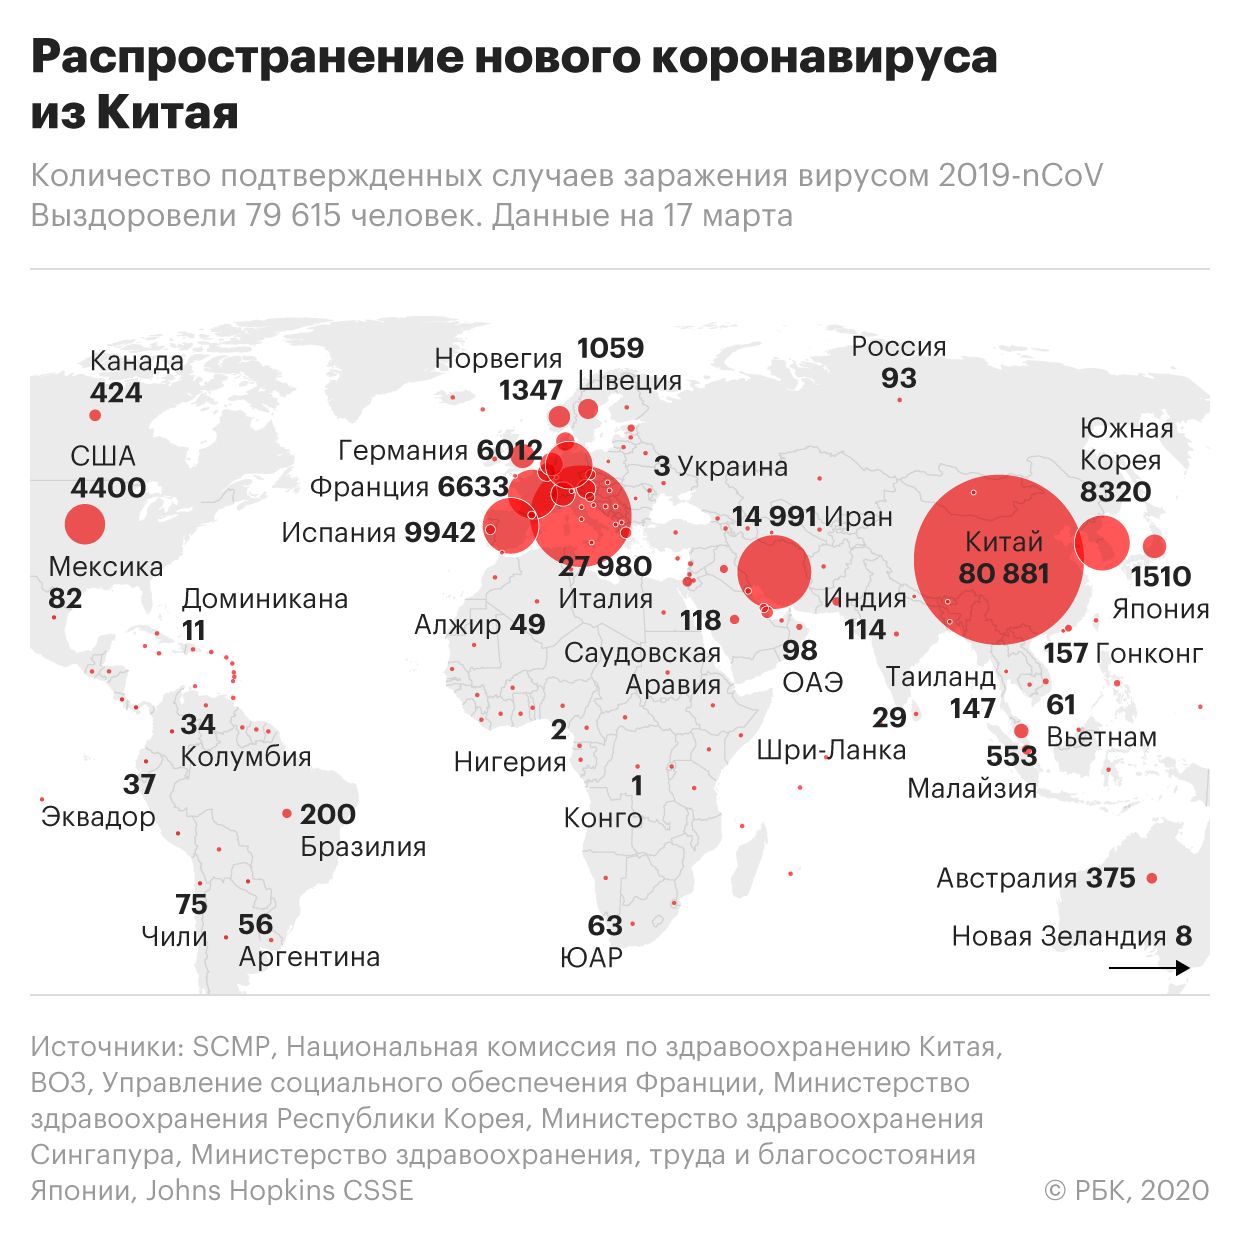 Обстановка в других странах. Количество заболевших коронавирусом. Распространение коронавируса в России. Количество зараженных по странам. Количество заболевших коронавирусом по странам.